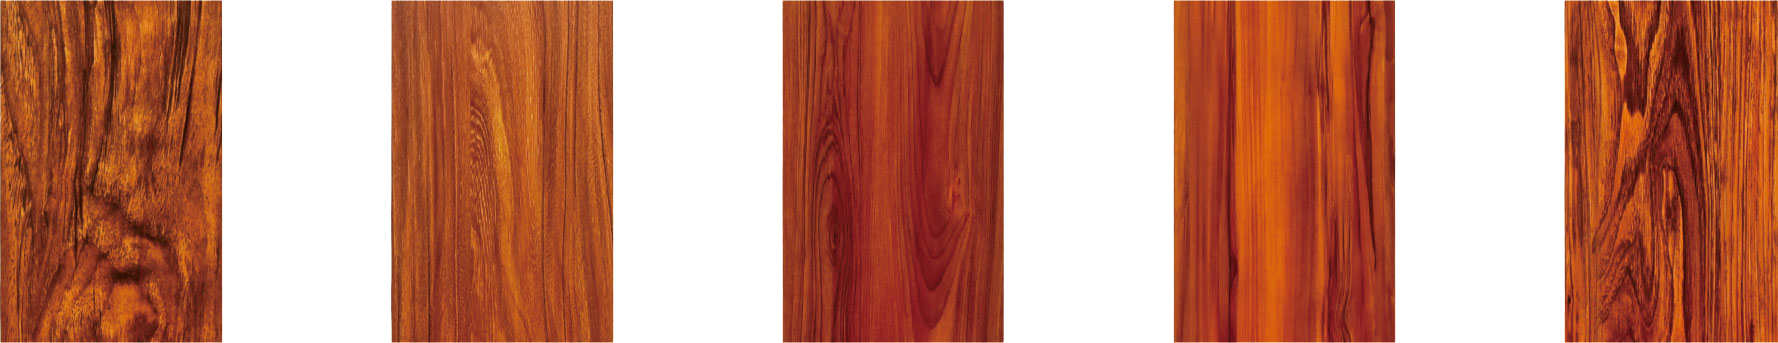 Skin wood grain series (indoor)